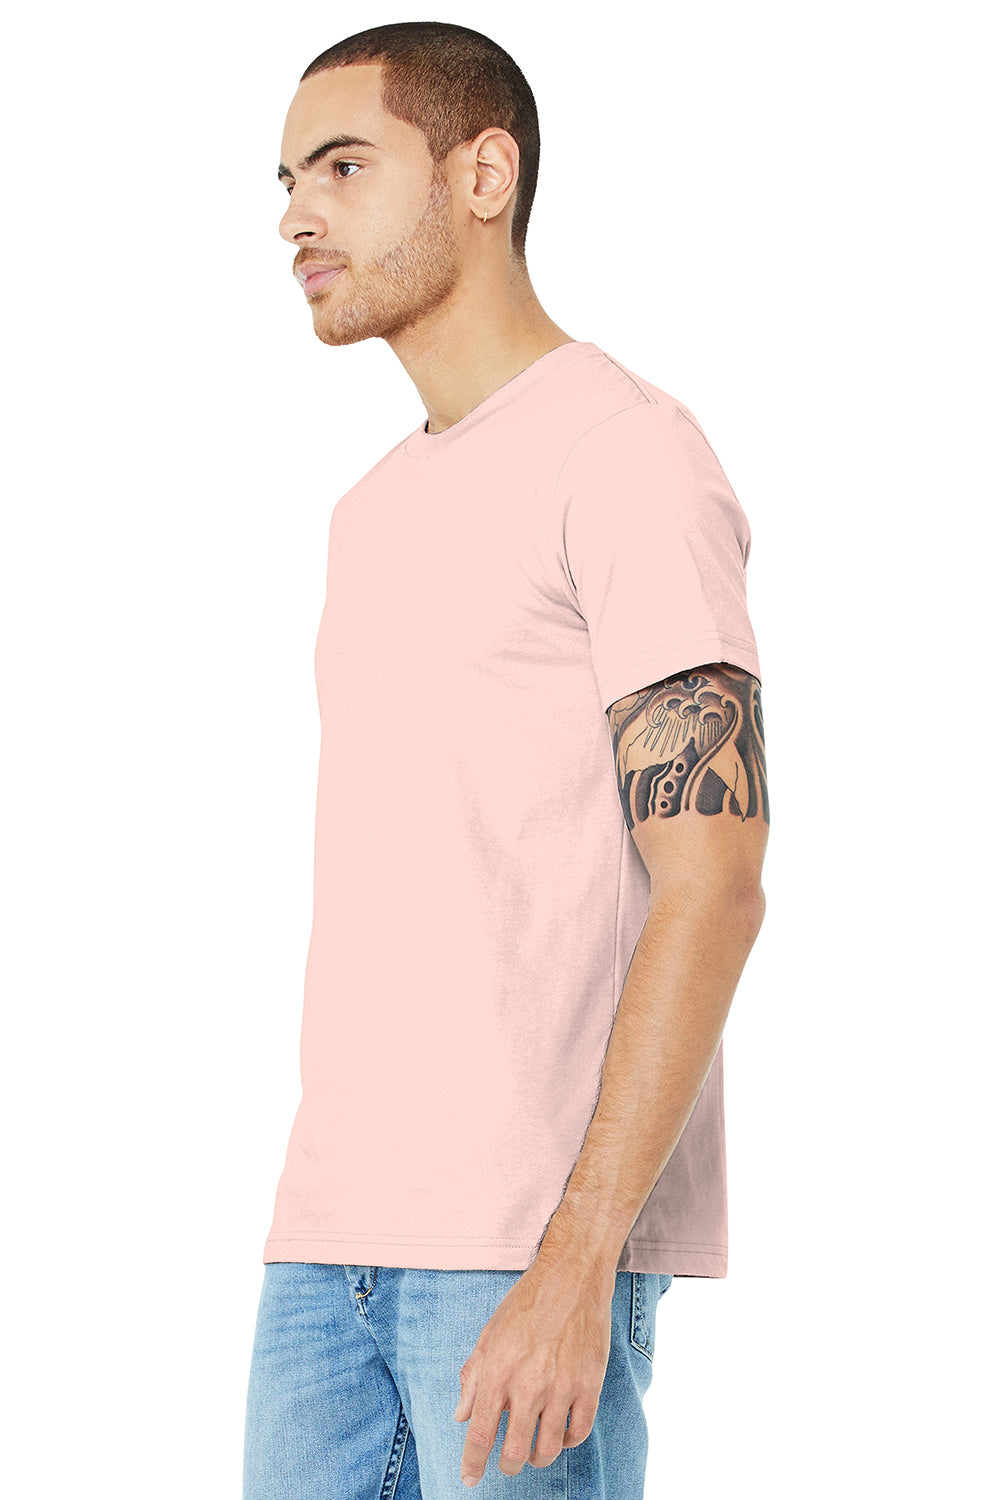 Bella + Canvas BC3001/3001C Mens Jersey Short Sleeve Crewneck T-Shirt Soft Pink Model 3Q